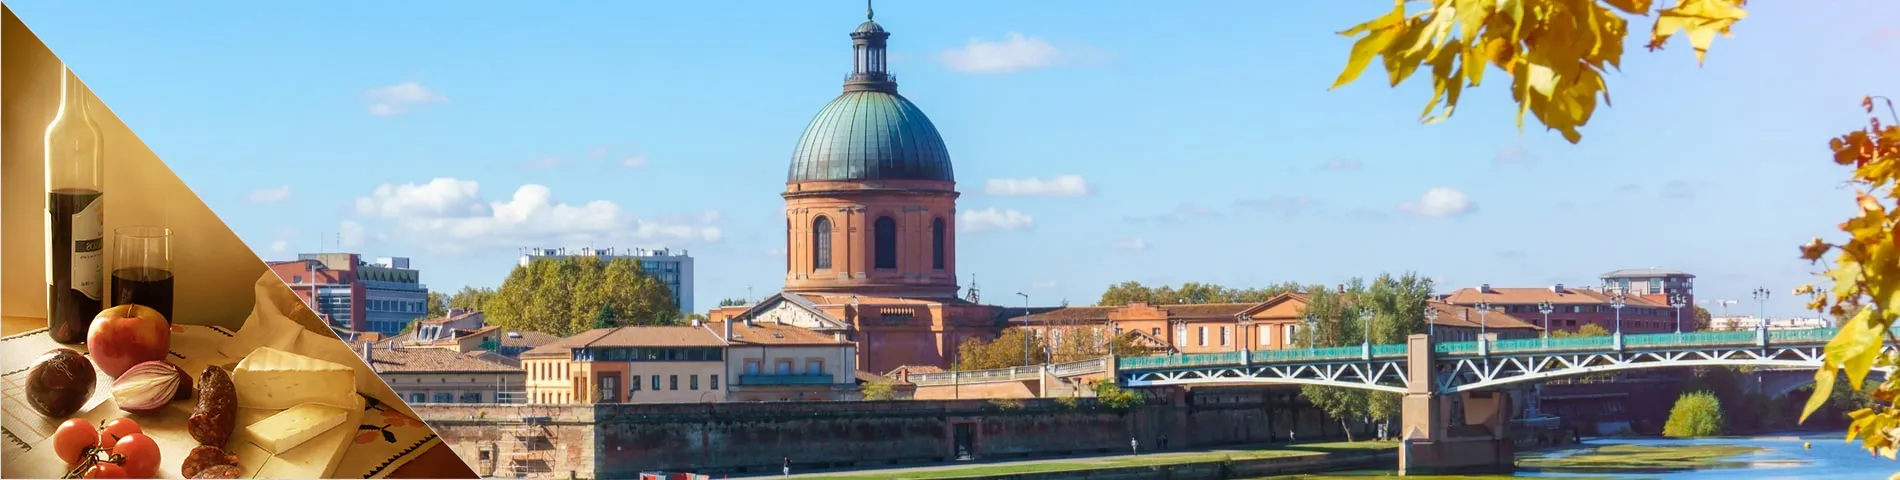 Toulouse - Francês & Cultura 